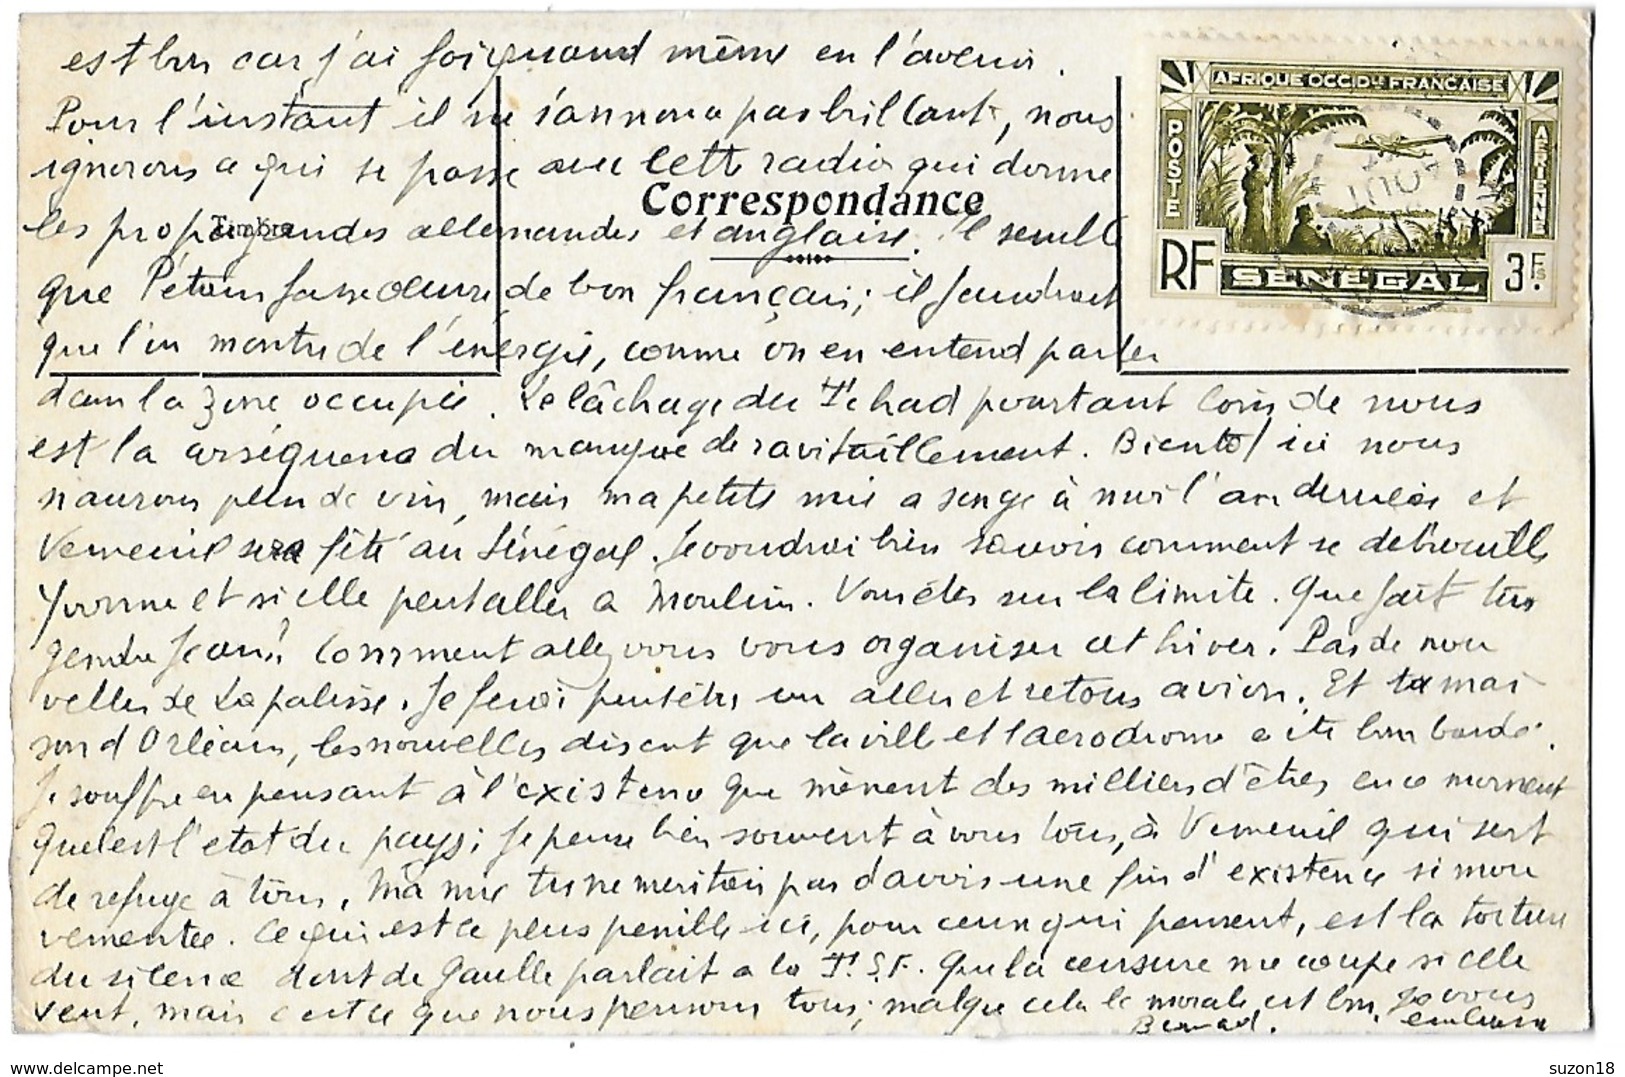 Guerre 39 - Ww2 - Carte-lettre Illustree Avion - Senegal - Lettres & Documents